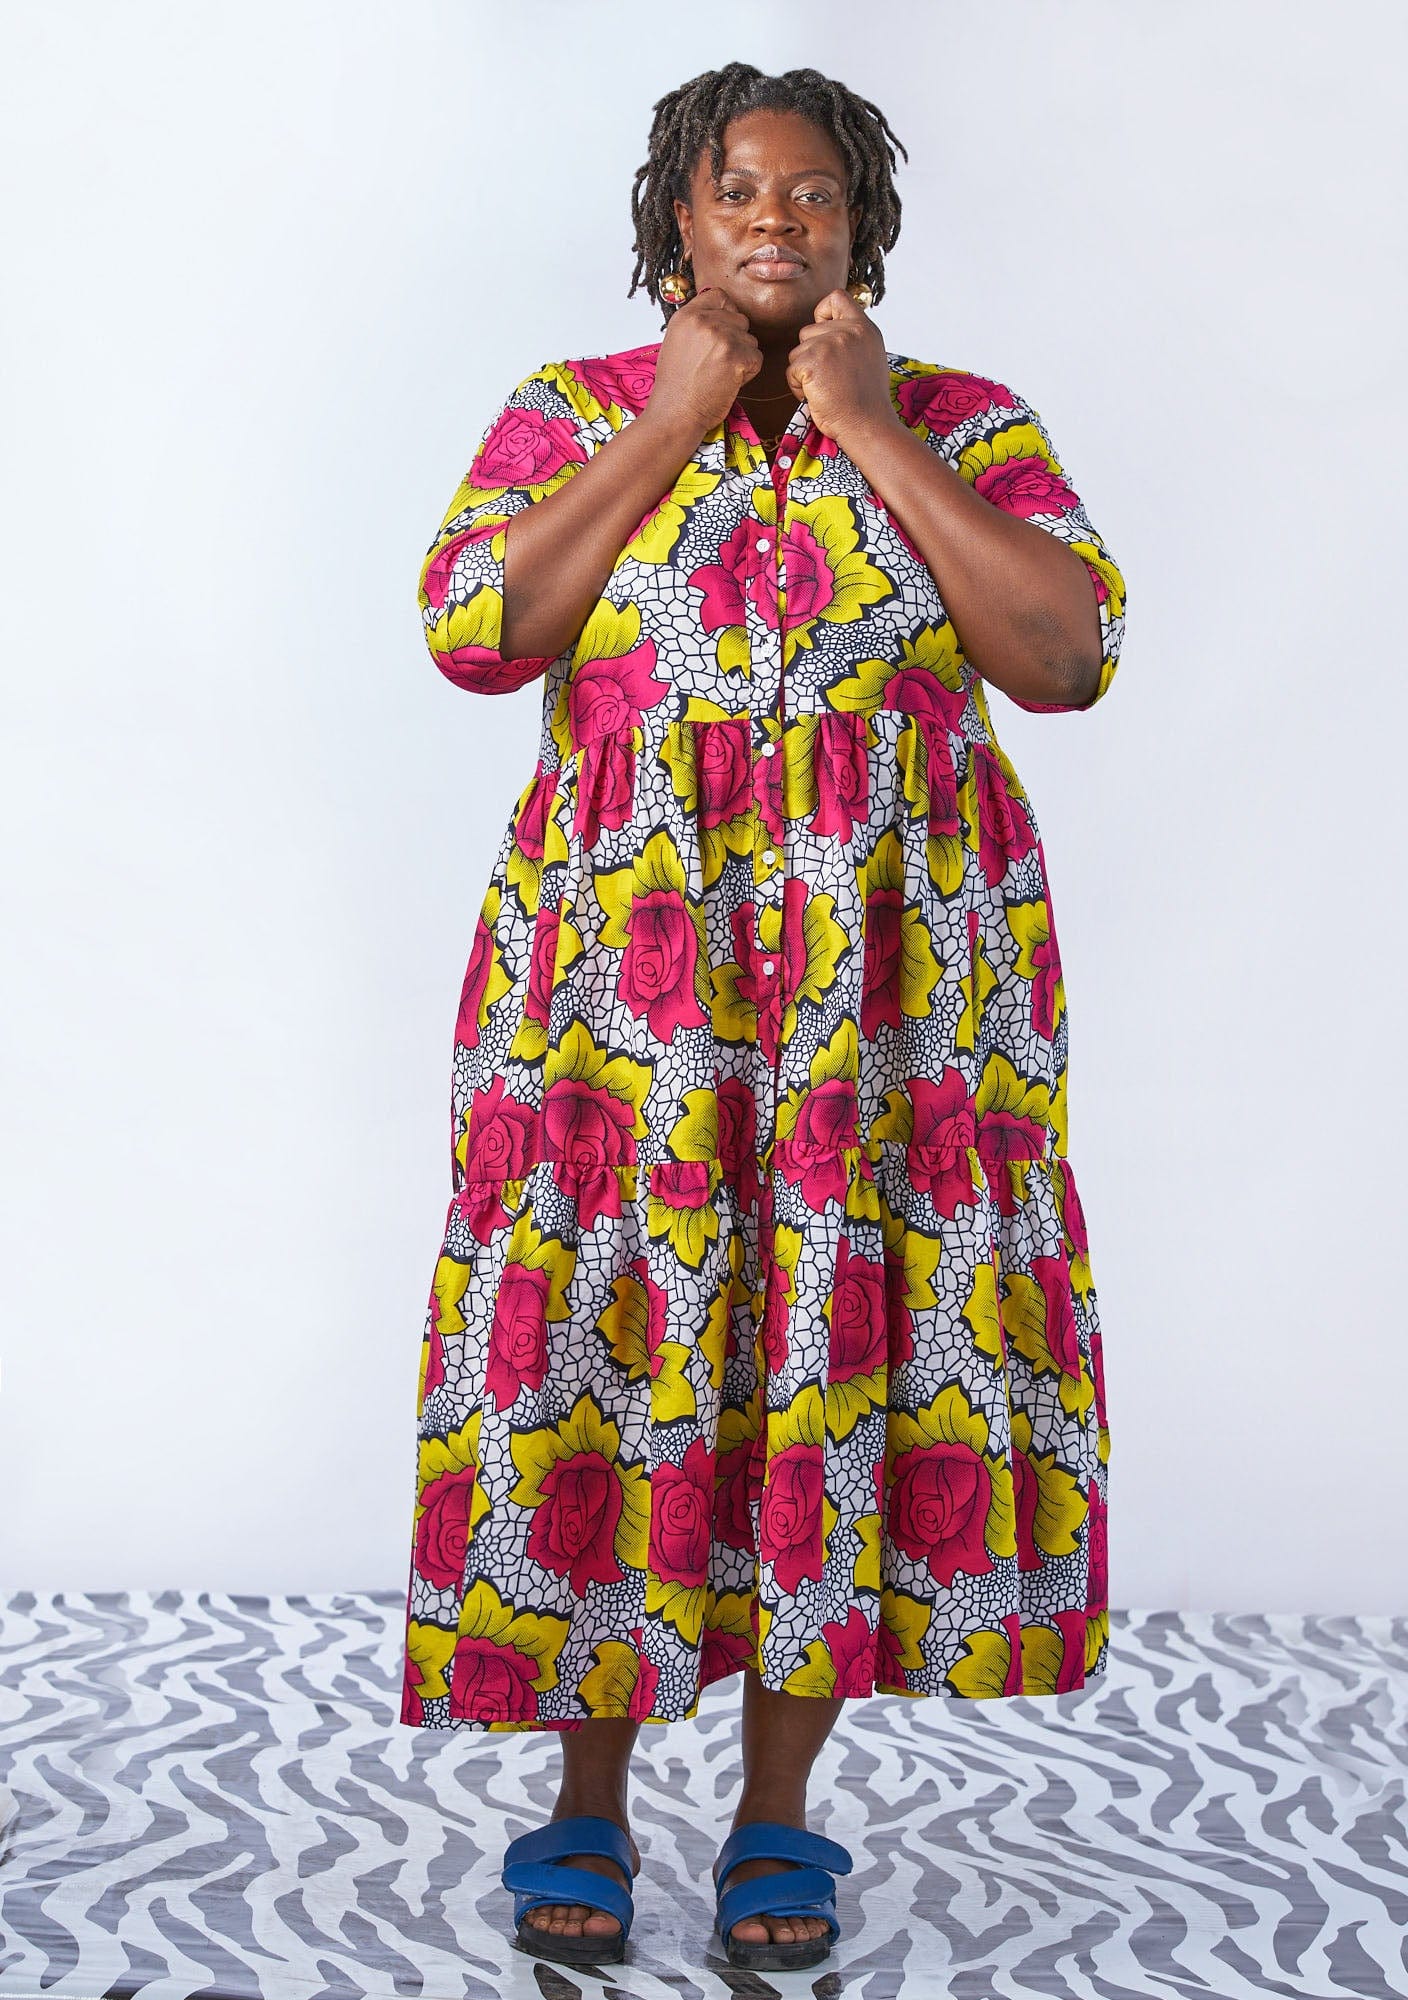 30 Best Flower Chiffon Gown Styles in Nigeria - Kaybee Fashion Styles |  Flowered chiffon gown styles, Chiffon gown styles, Materials gown style